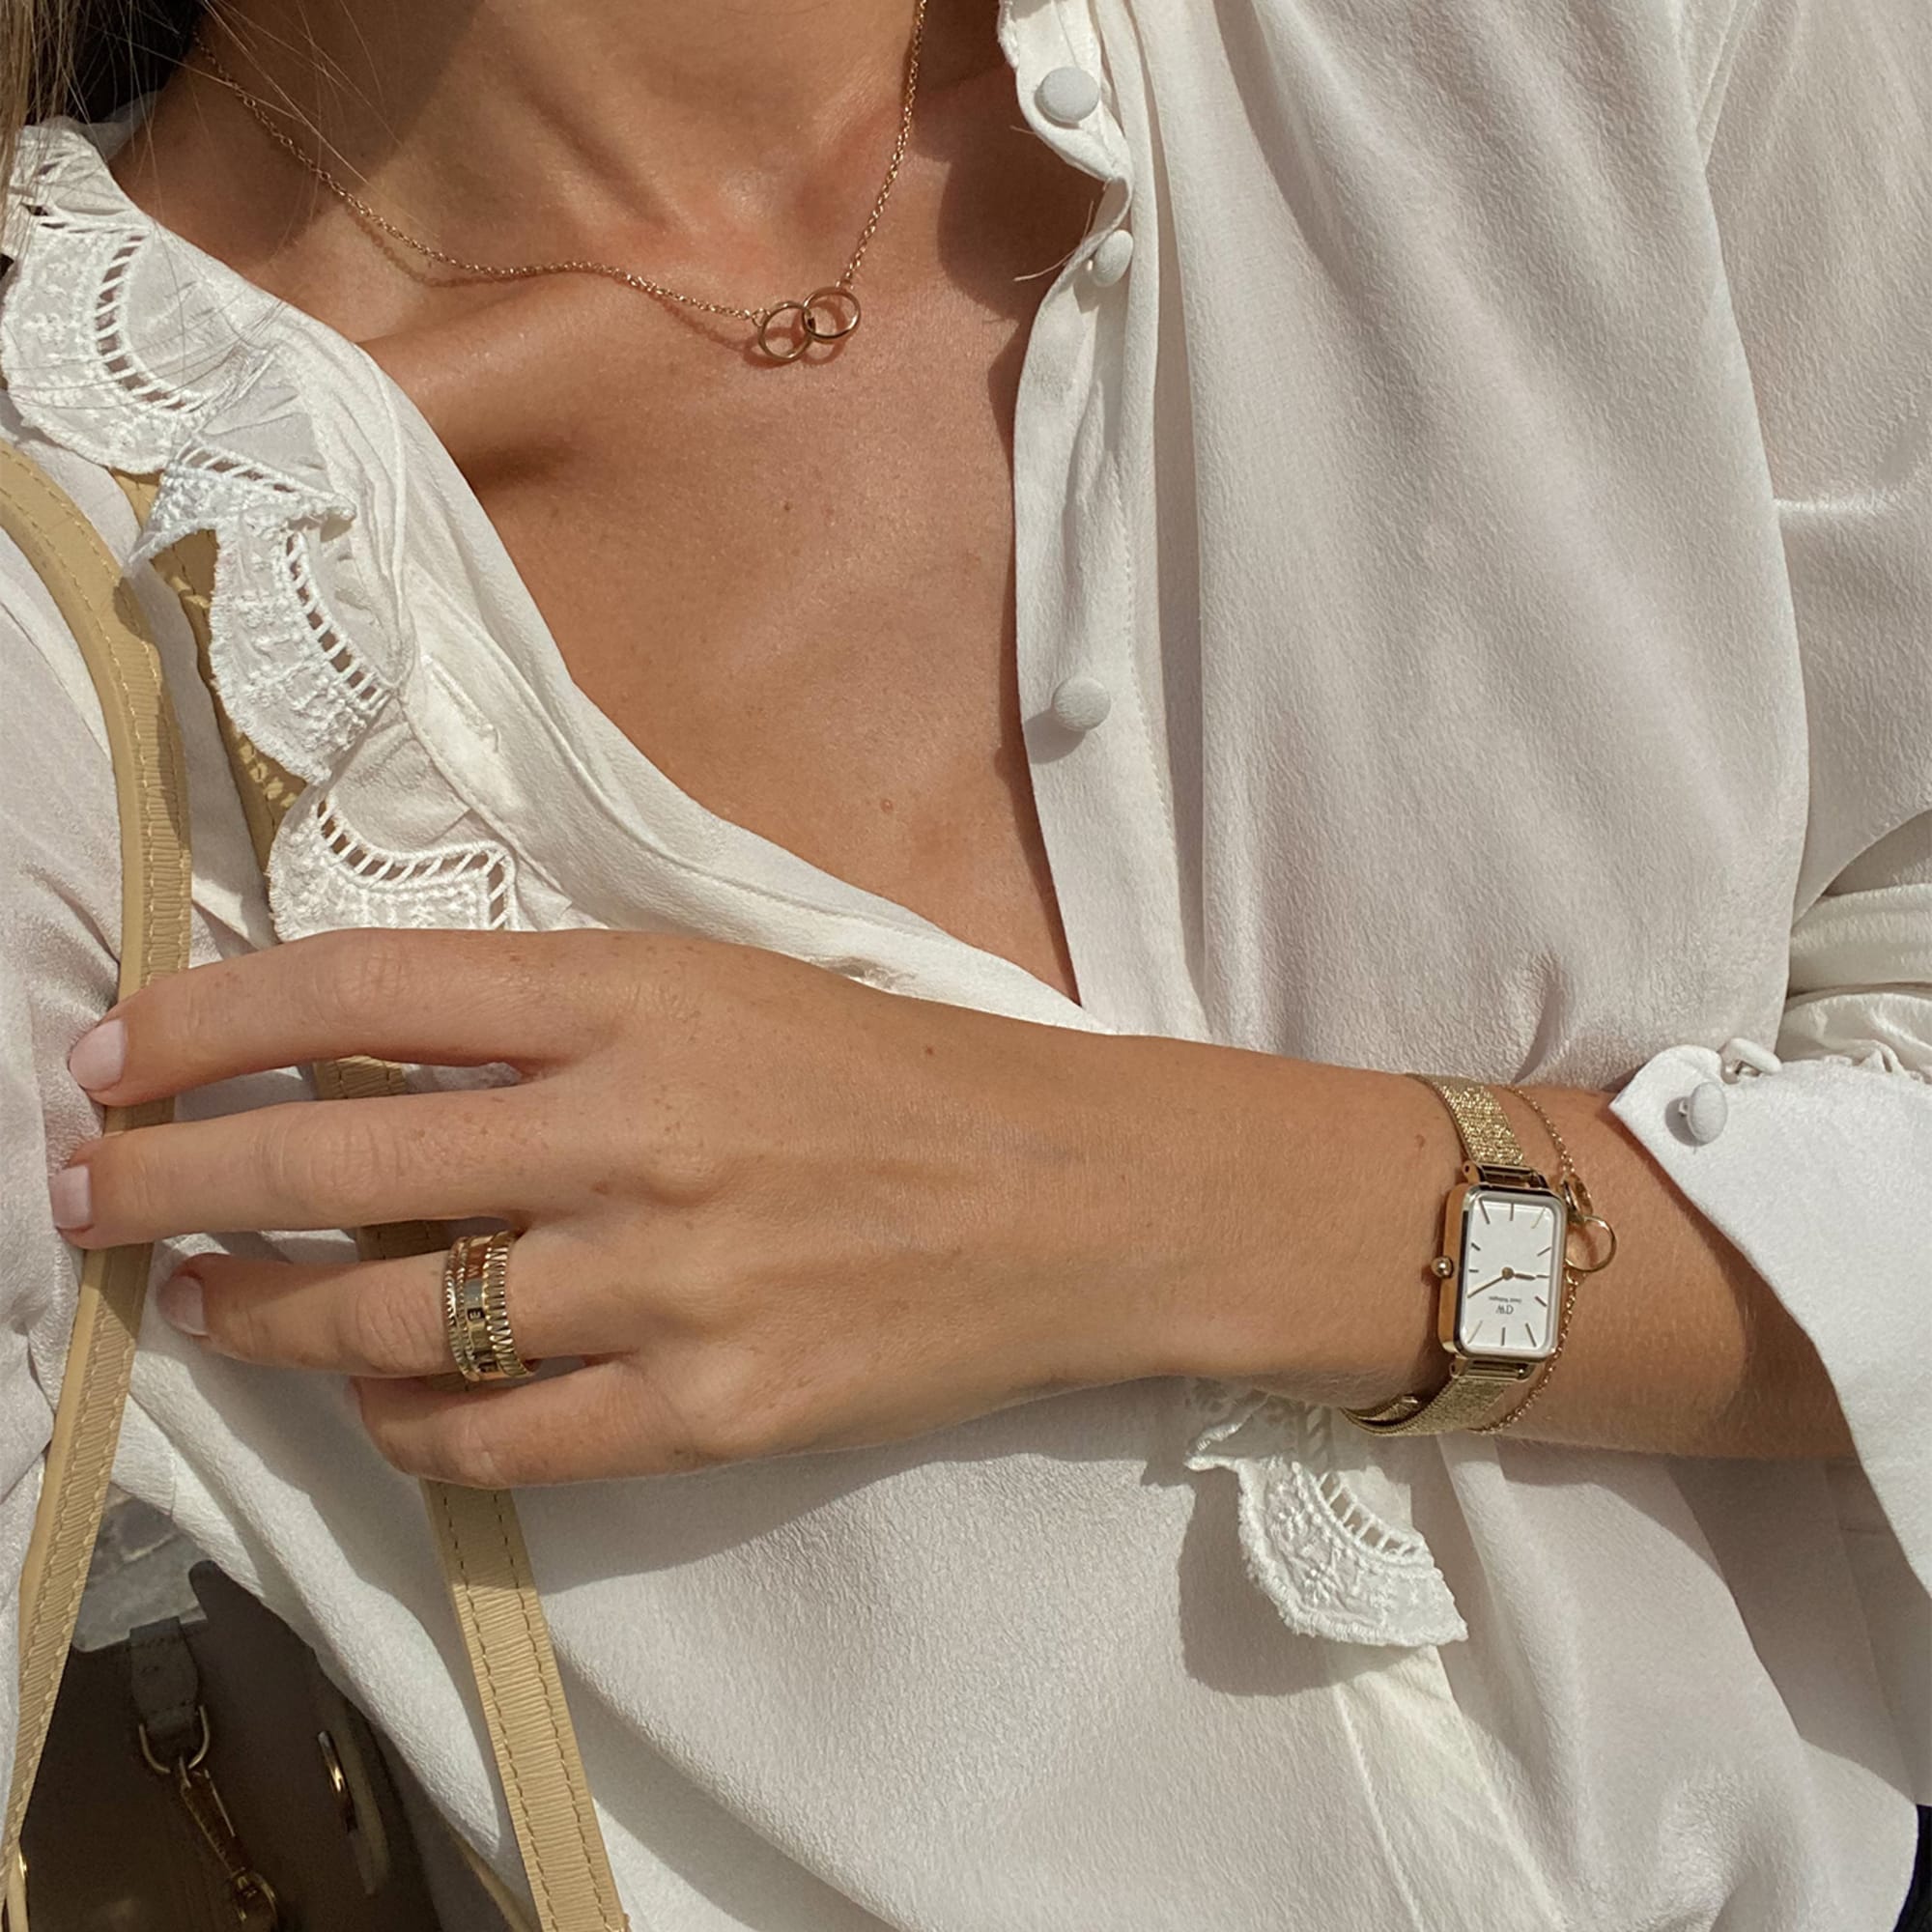 Jewellery - Elan Unity bracelet in rose gold - 165mm | DW